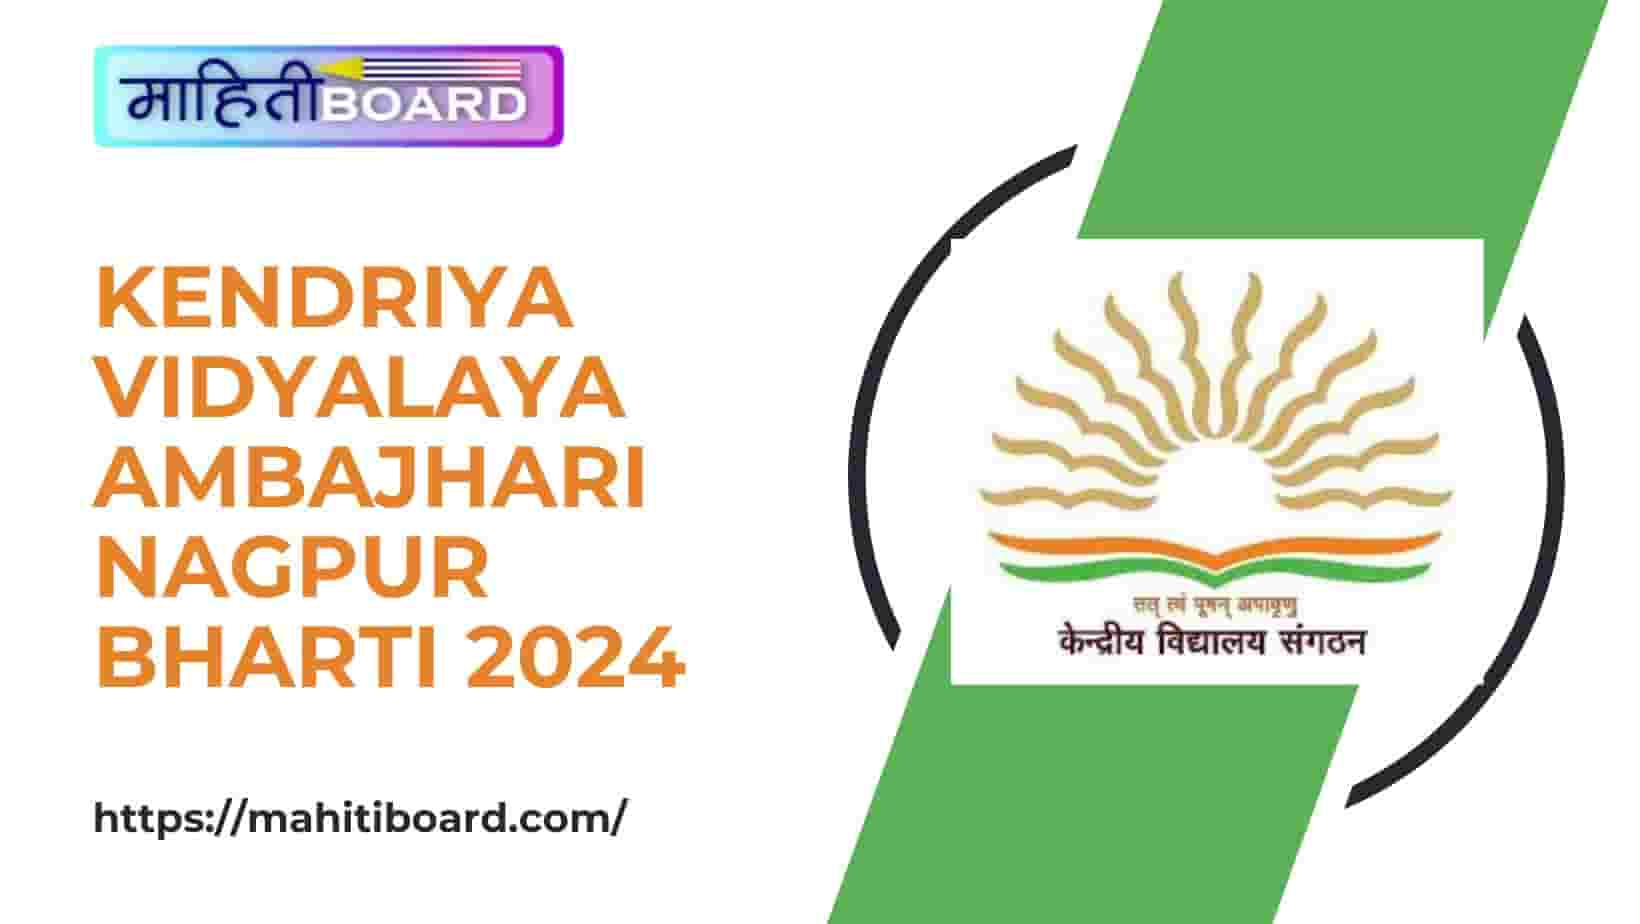 Kendriya Vidyalaya Ambajhari Nagpur Bharti 2024